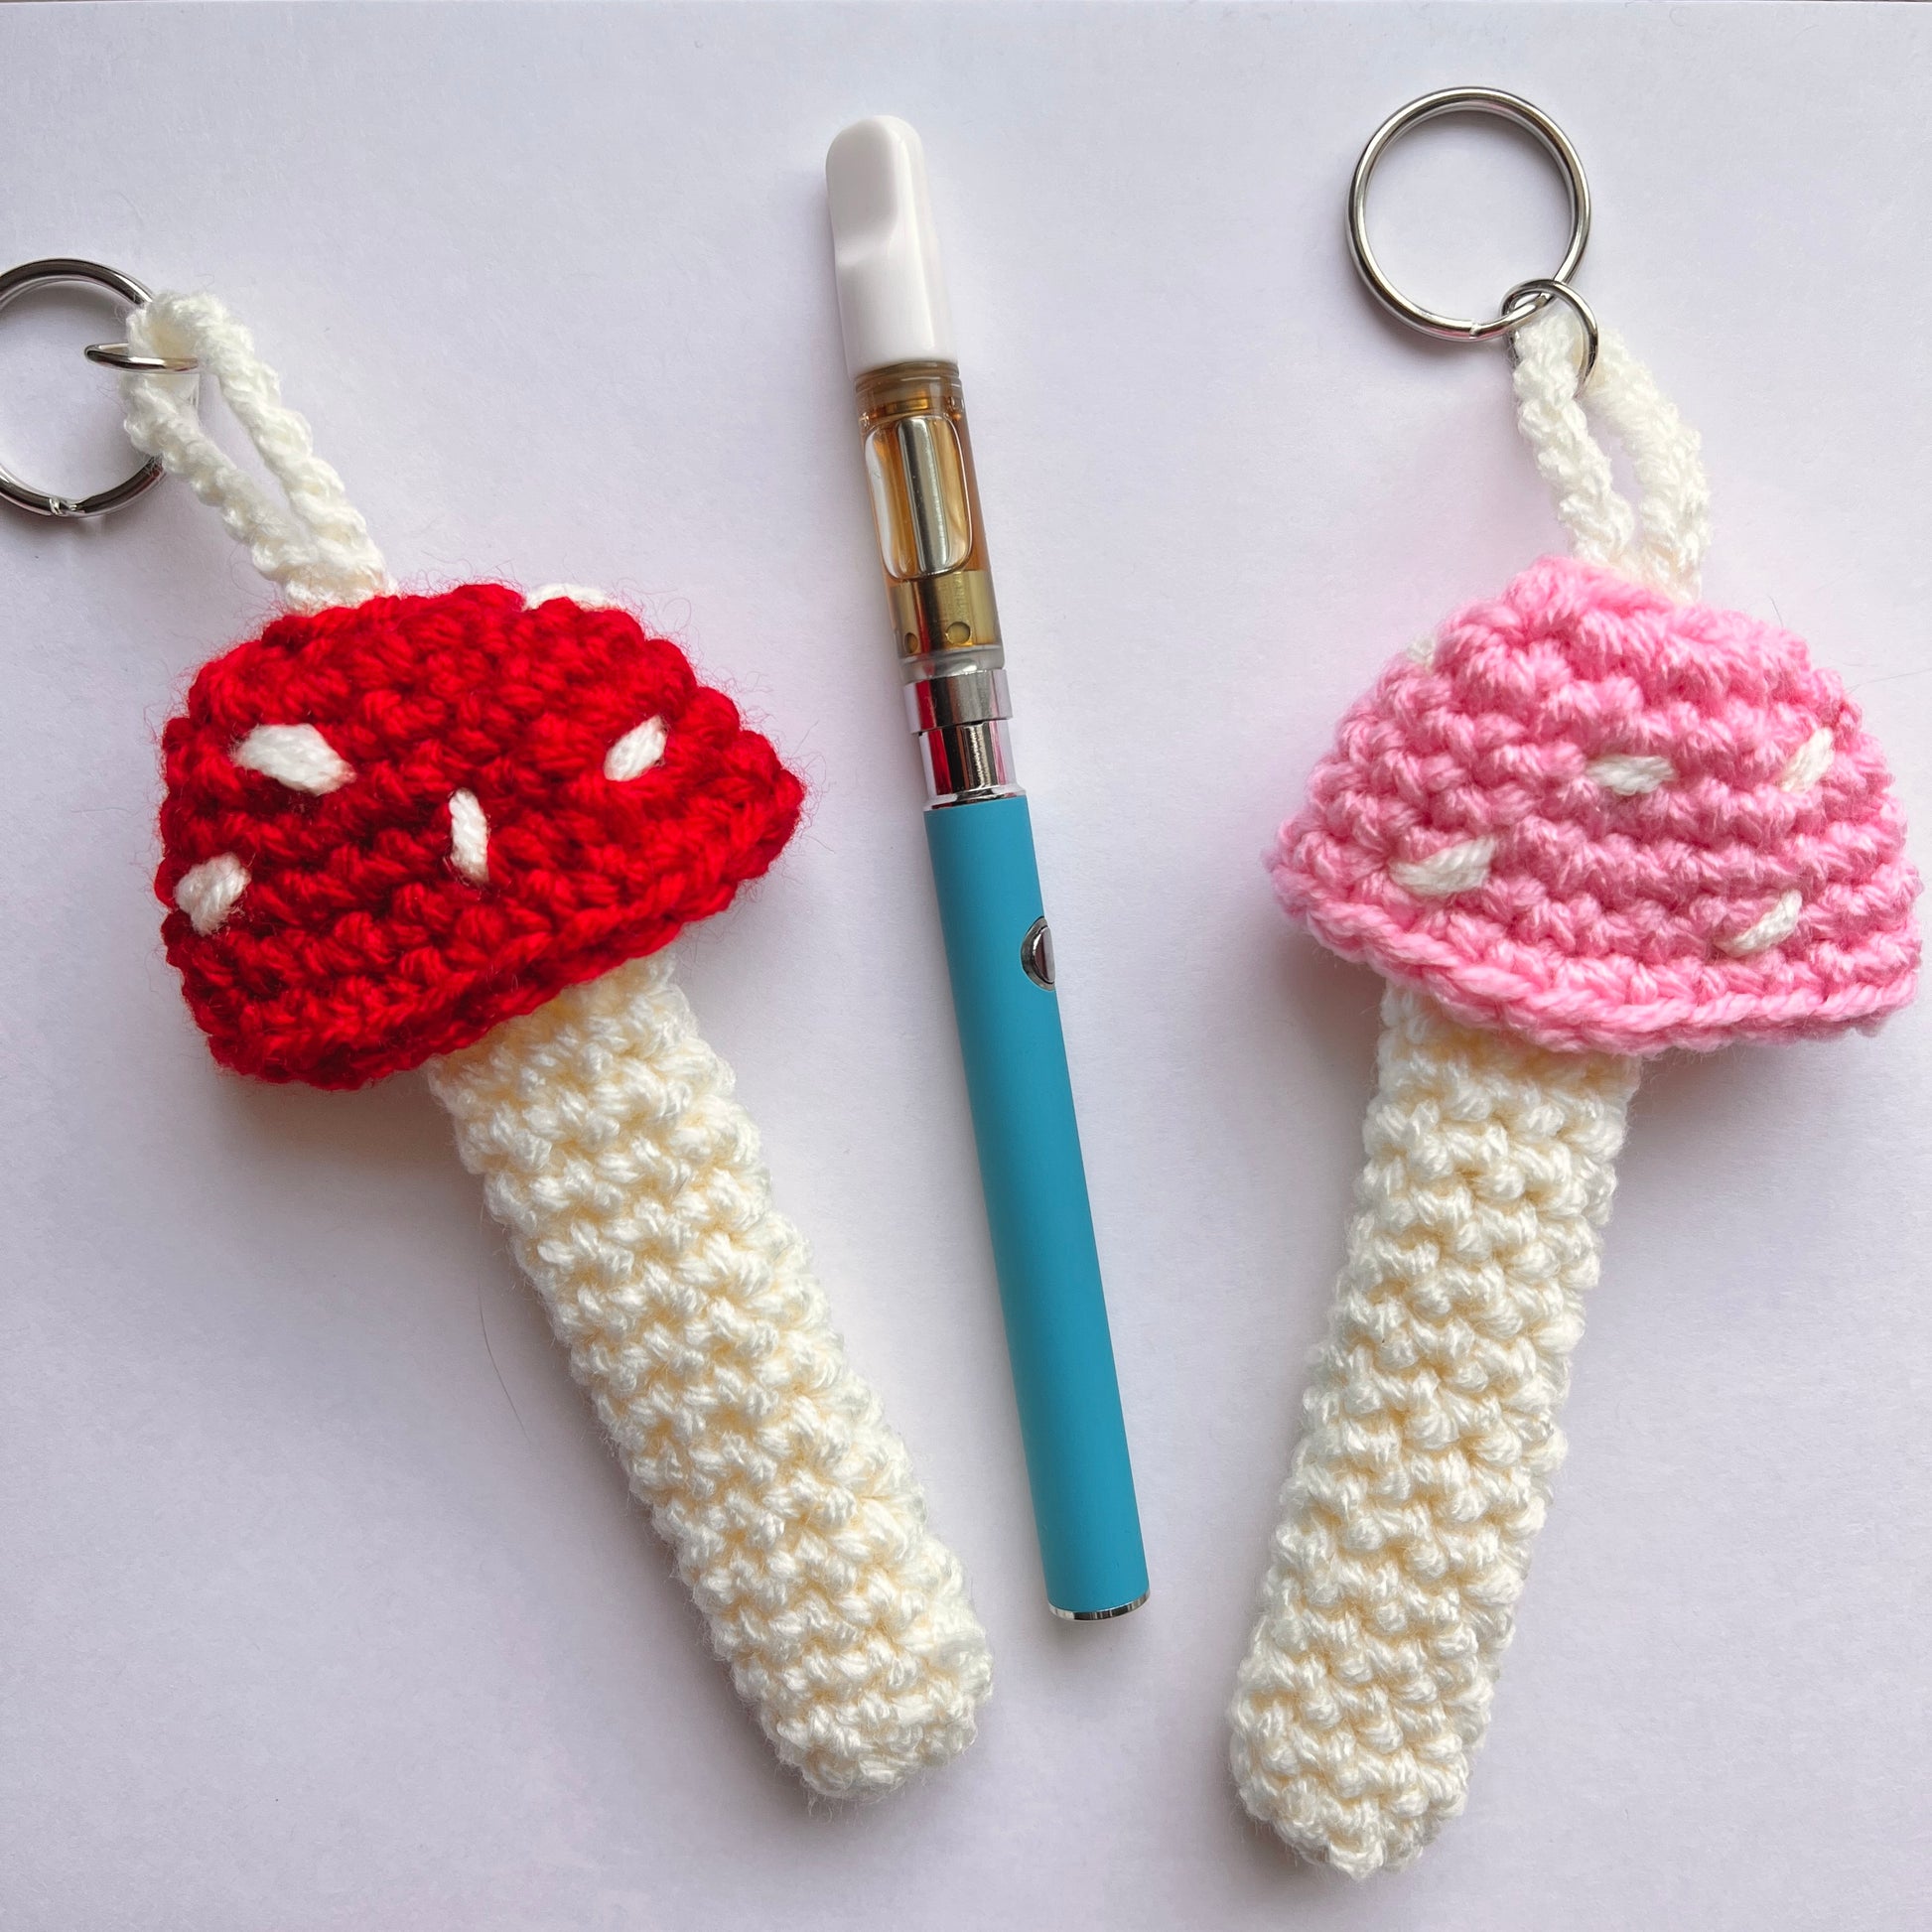 crochet mushroom vape holder keychain